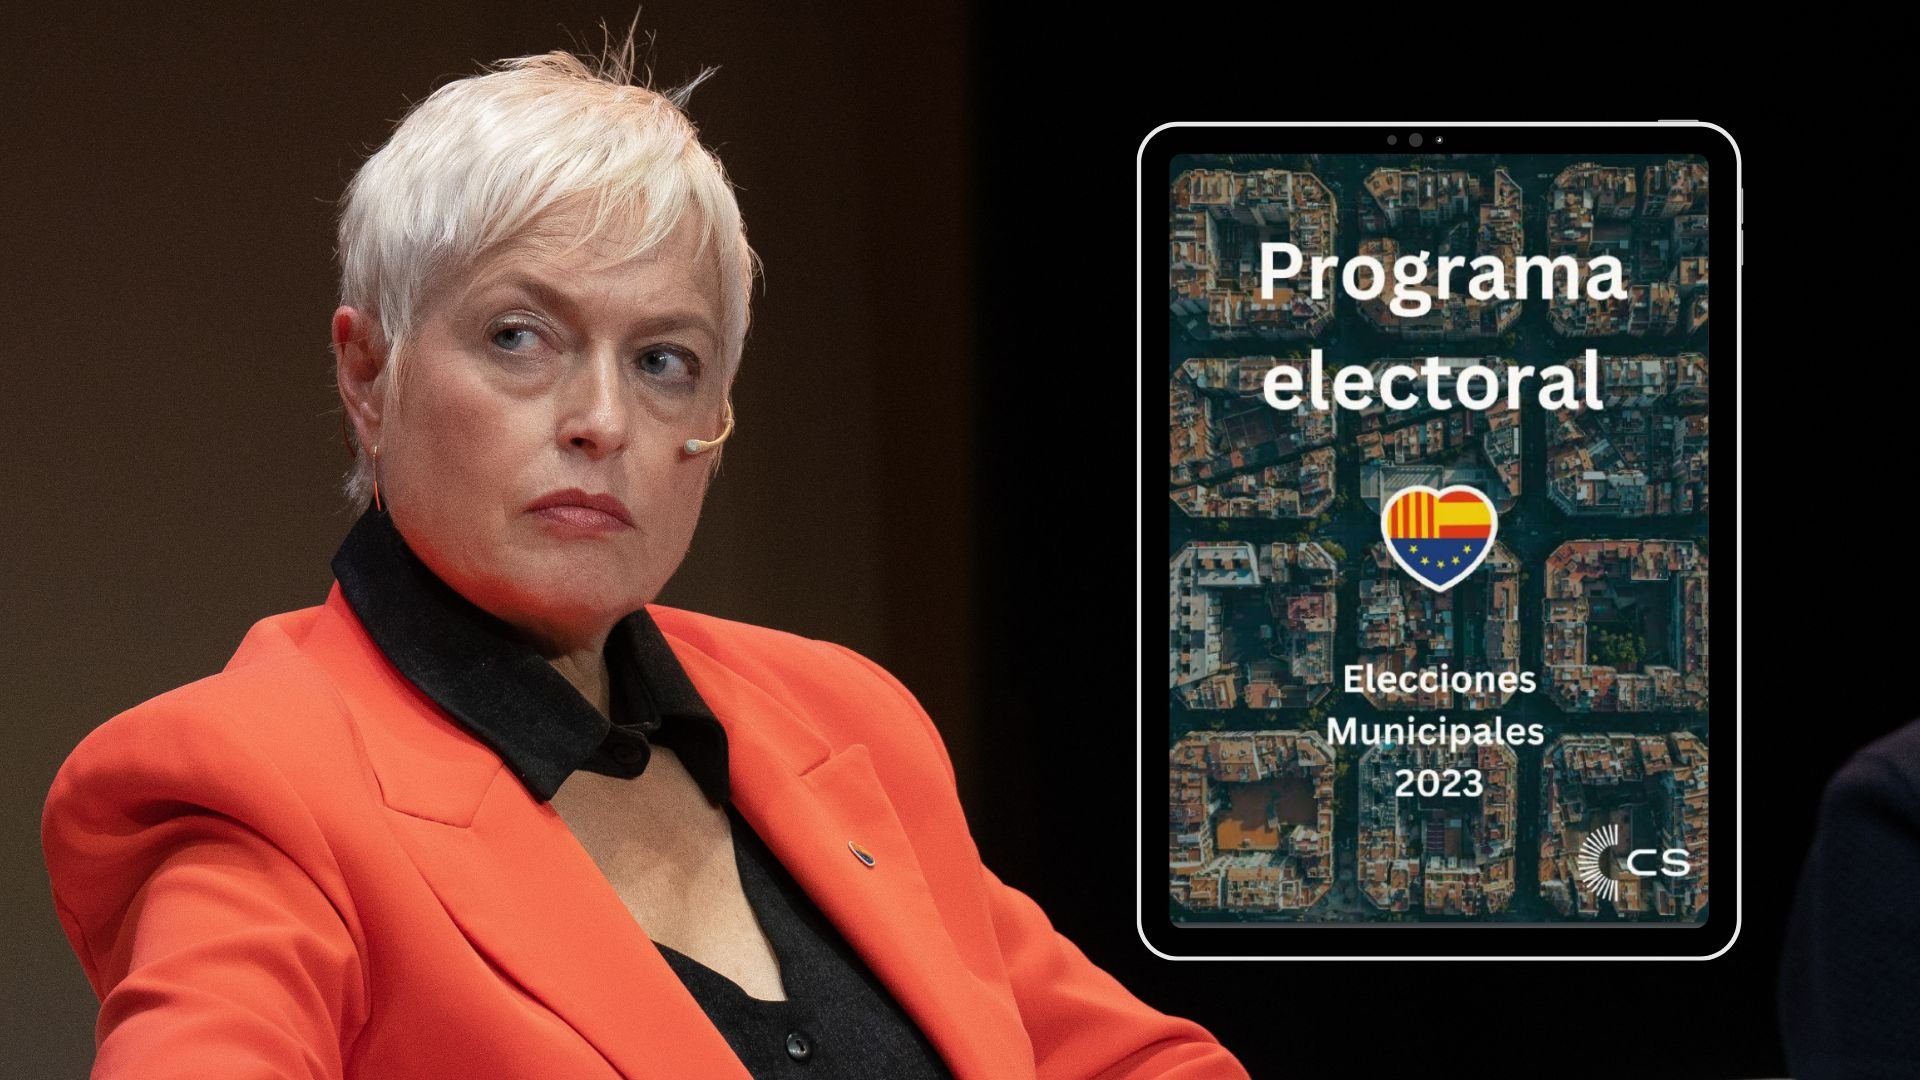 Programa electoral de Ciutadans a Barcelona: Què proposa Anna Grau?